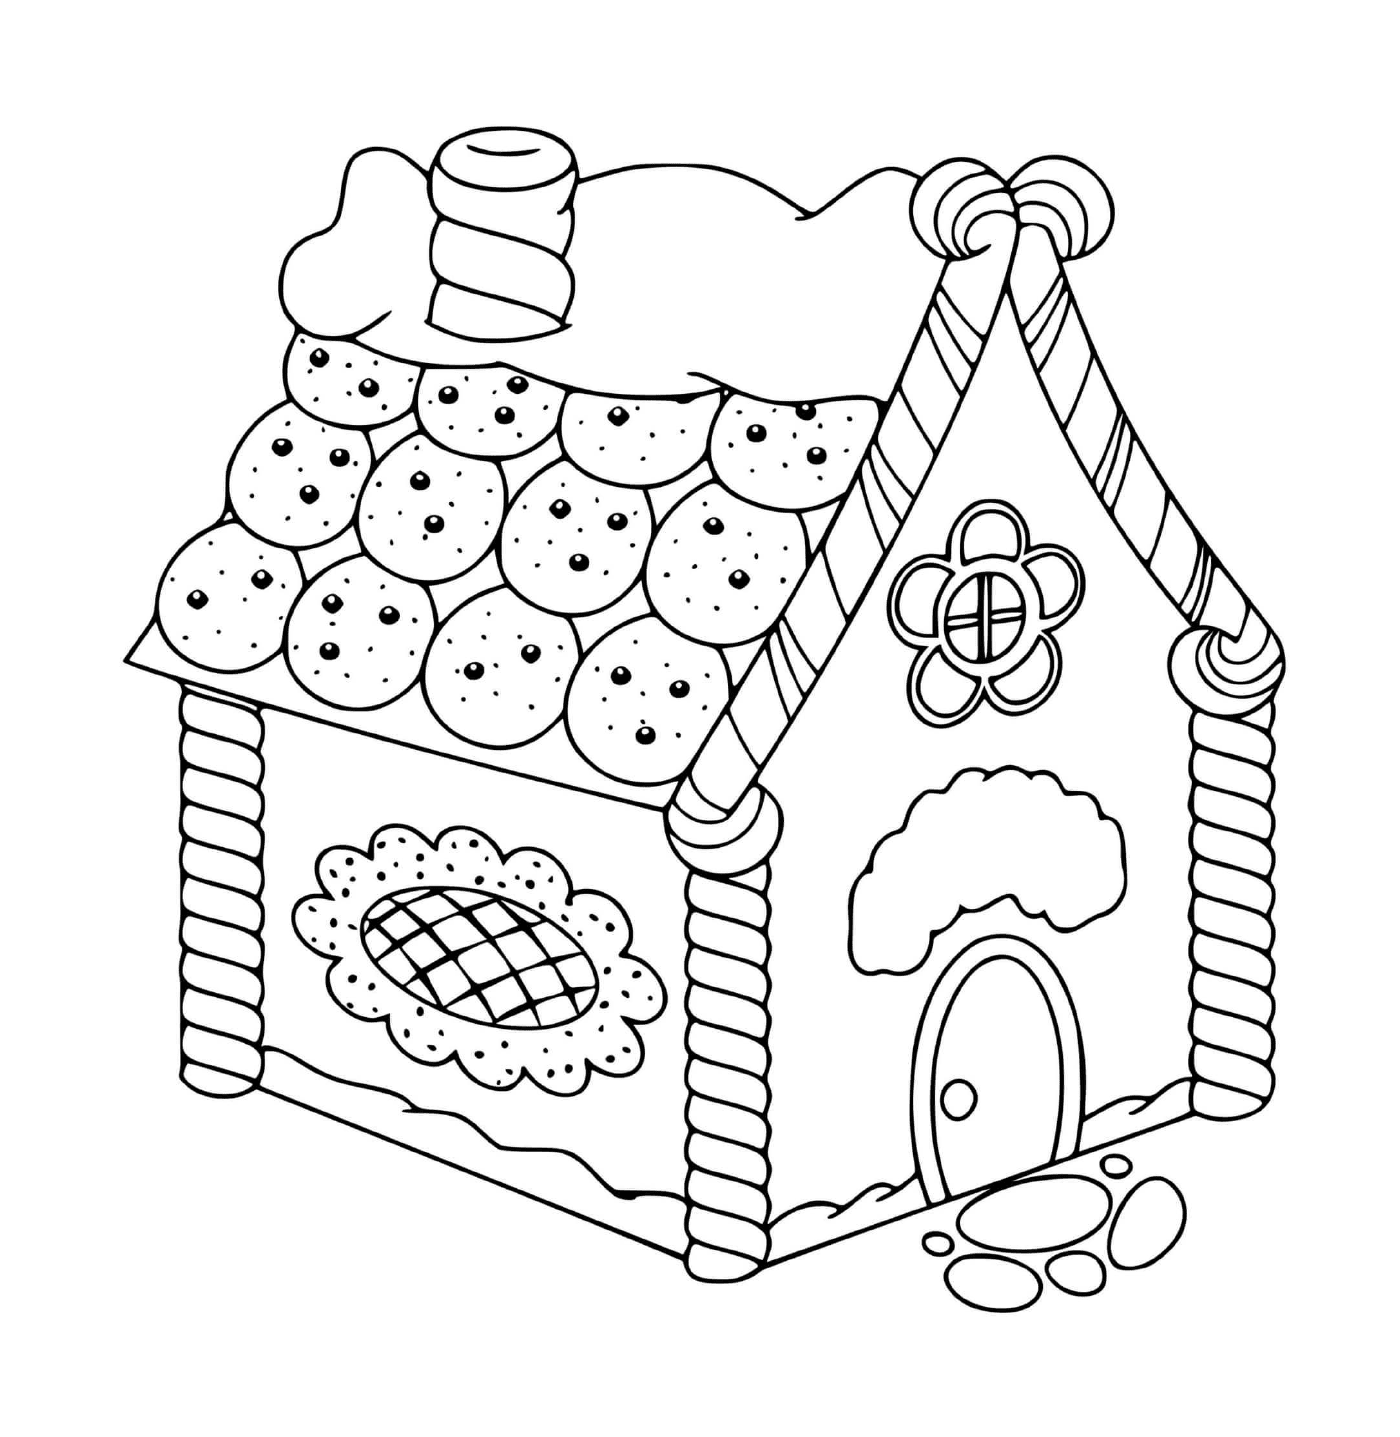  Encantadora casa de pan de jengibre 